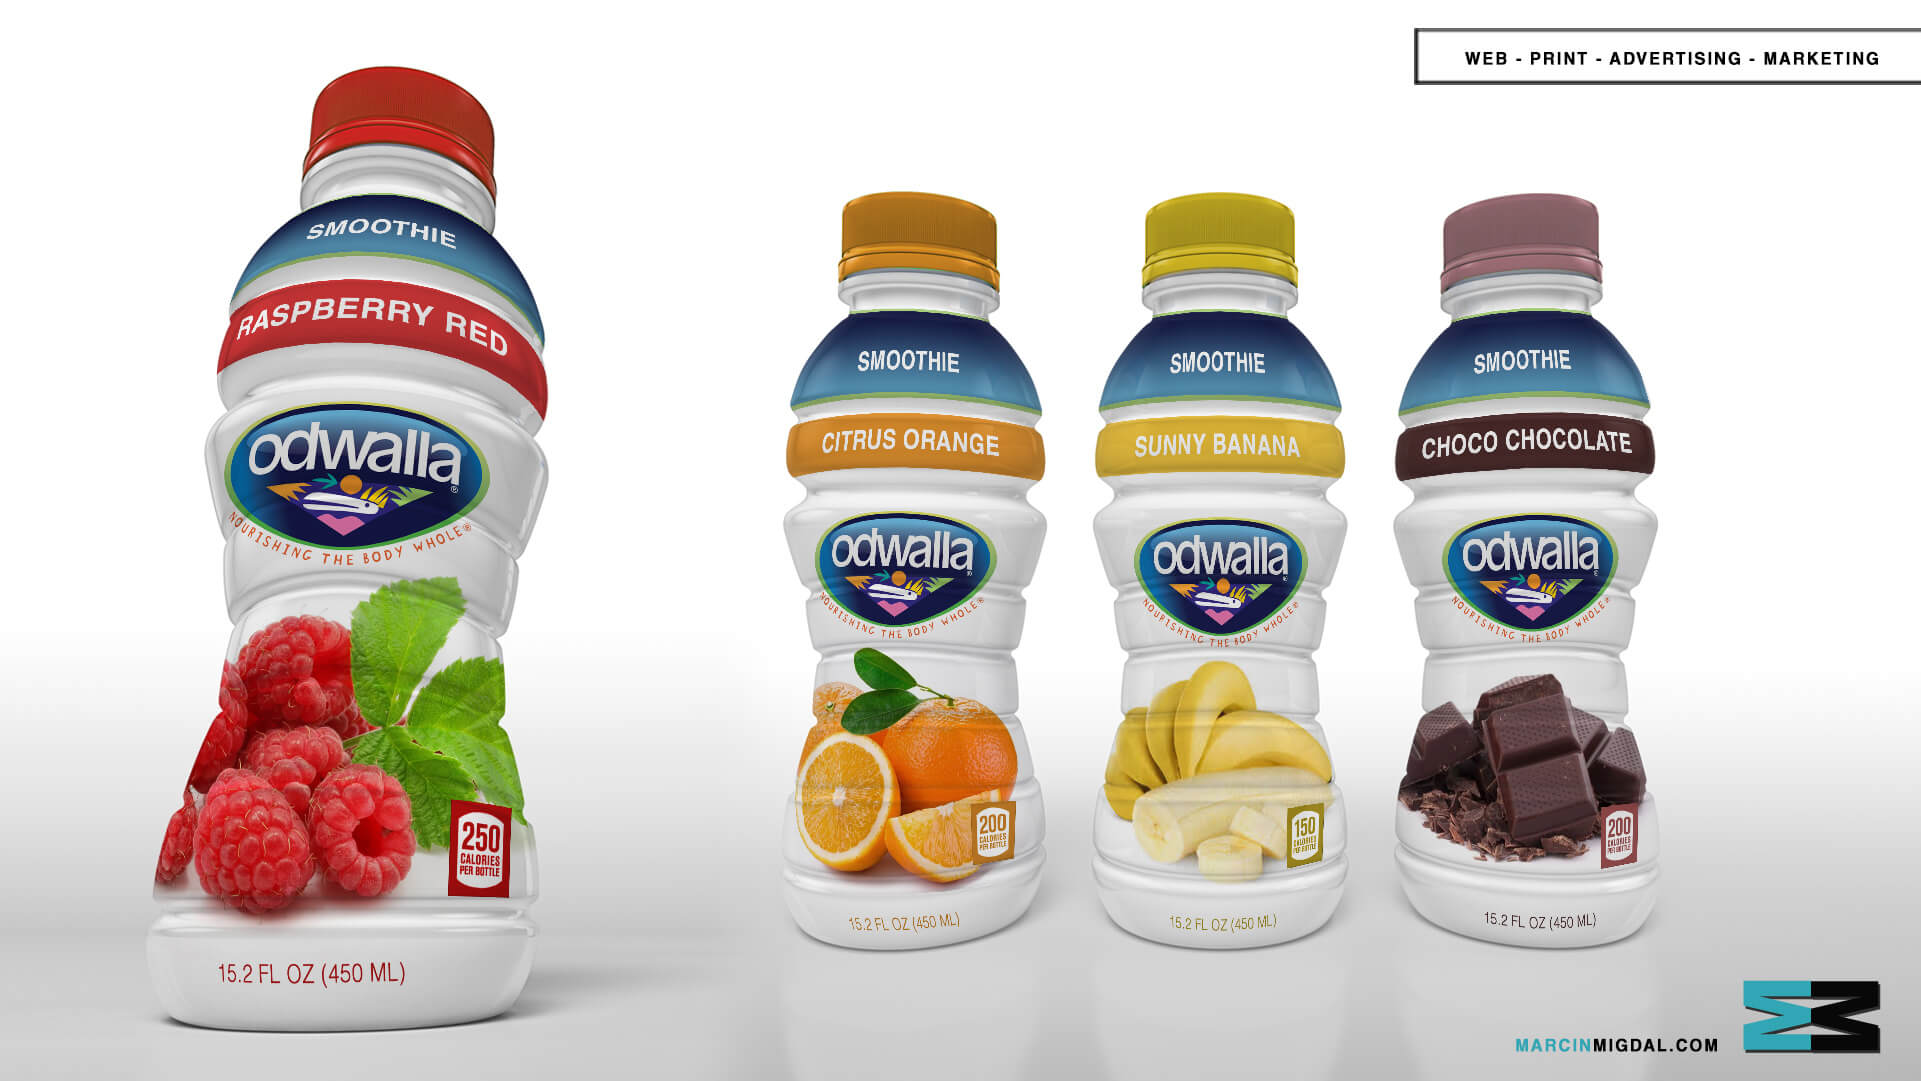  Odwalla - Beverage Packaging Design by Marcin Migdal 